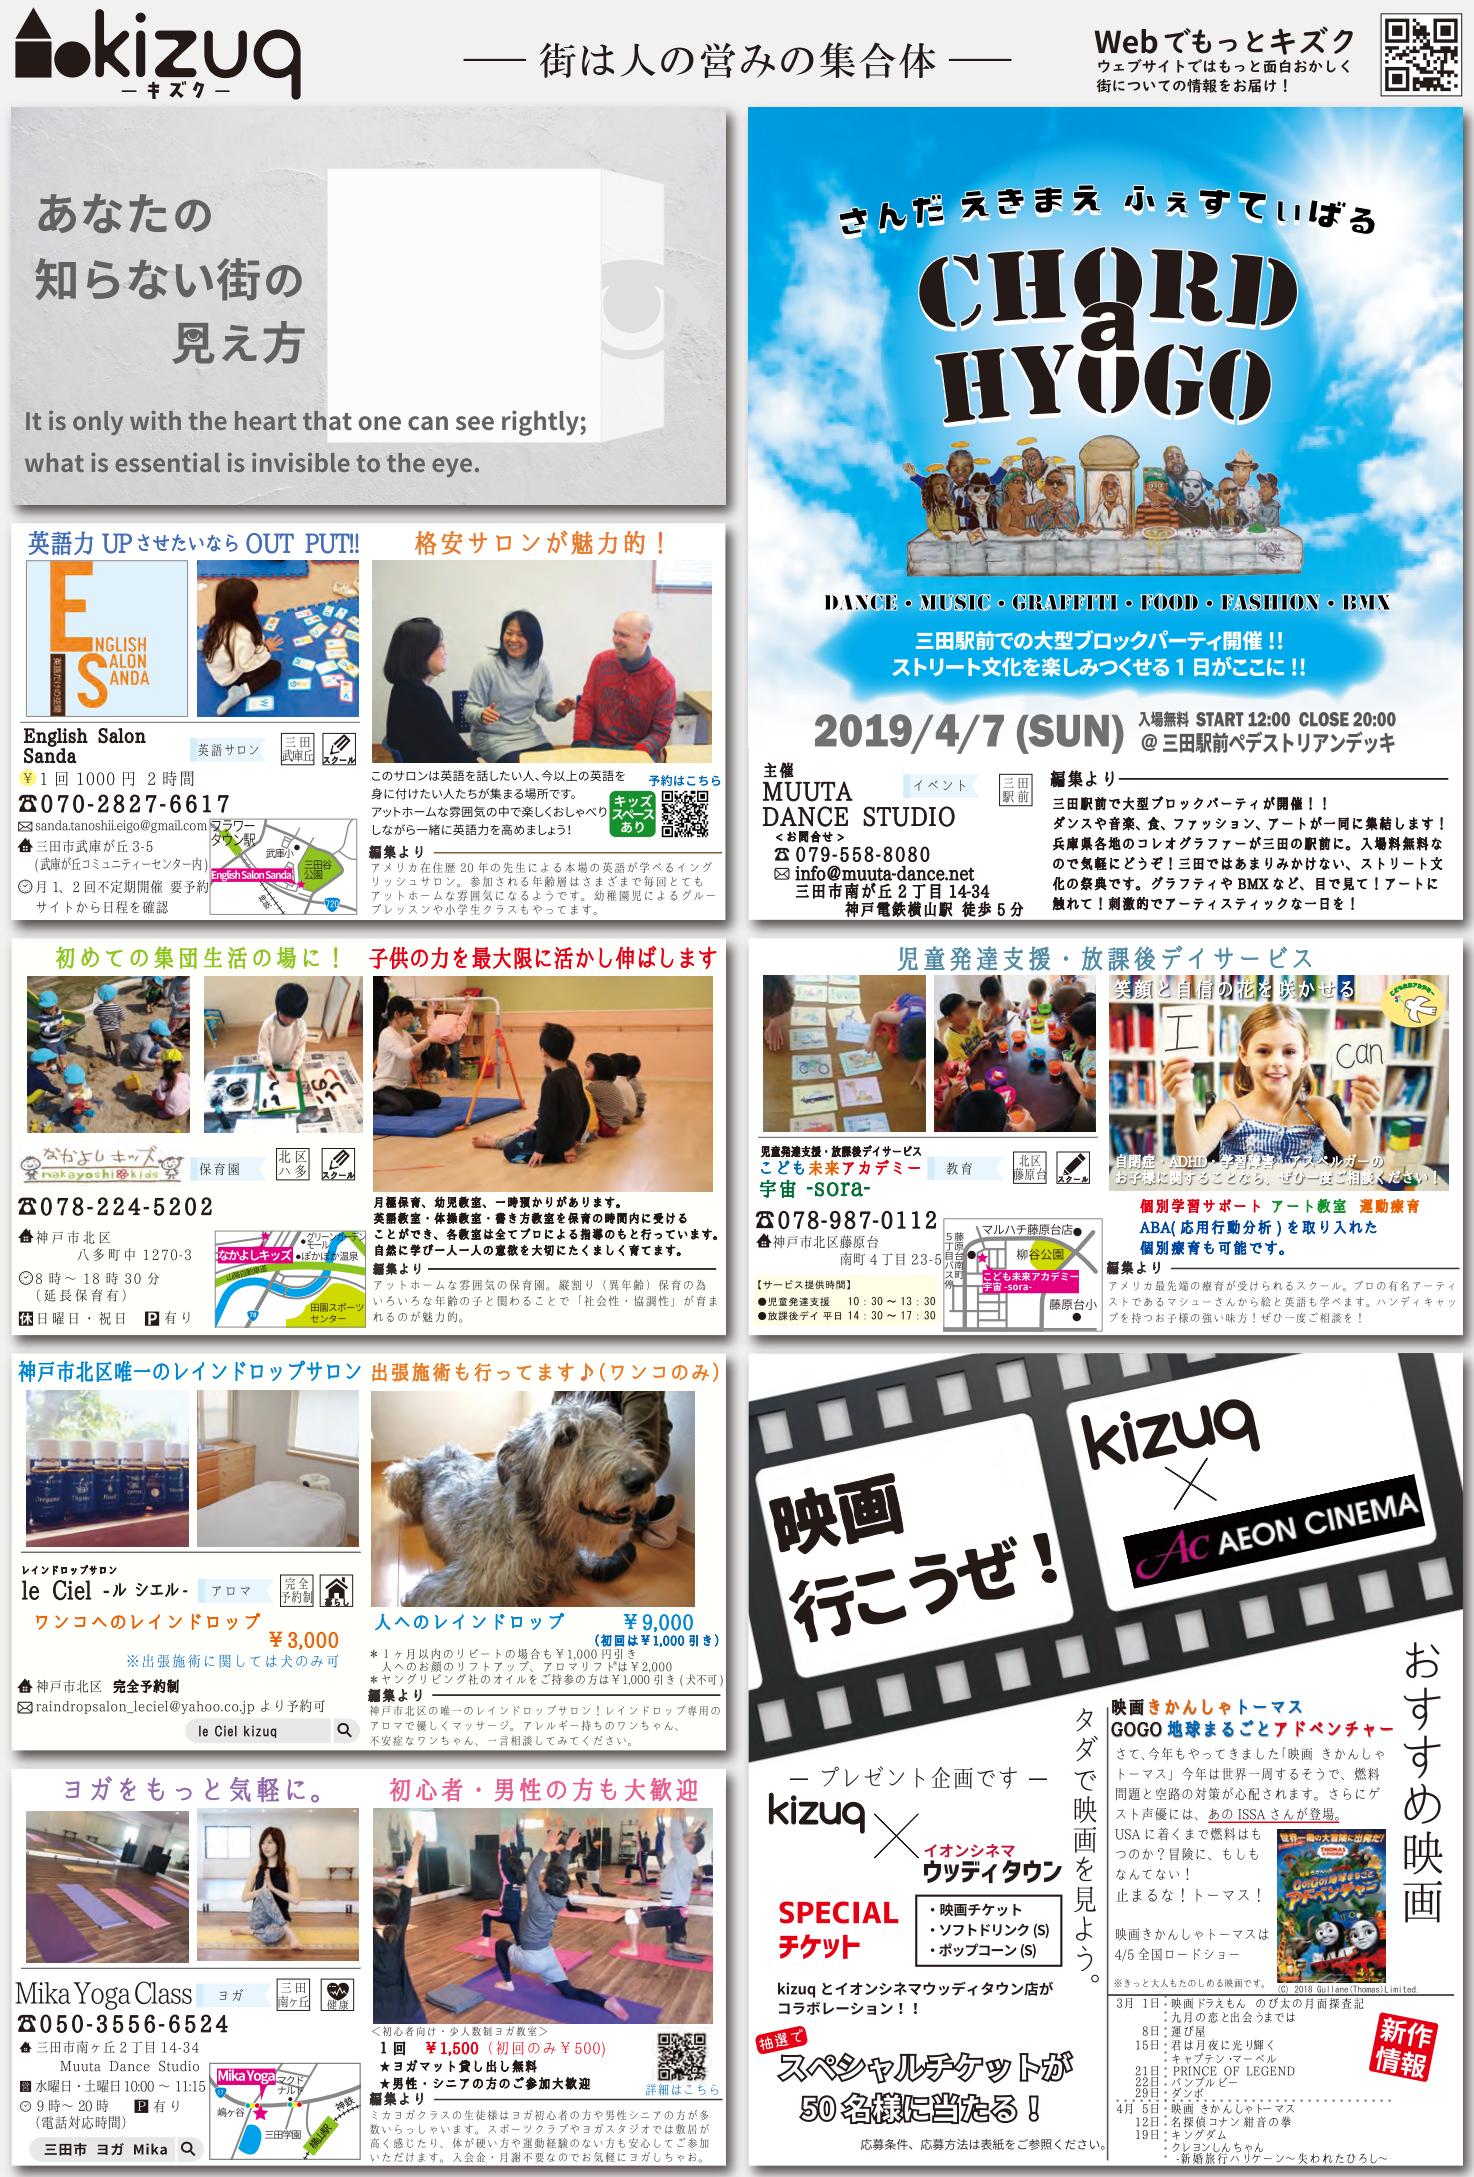 kizuq キズク の紙面が創刊いたしました kizuq ｷｽﾞｸ 神戸市北区 三田市の地域メディア